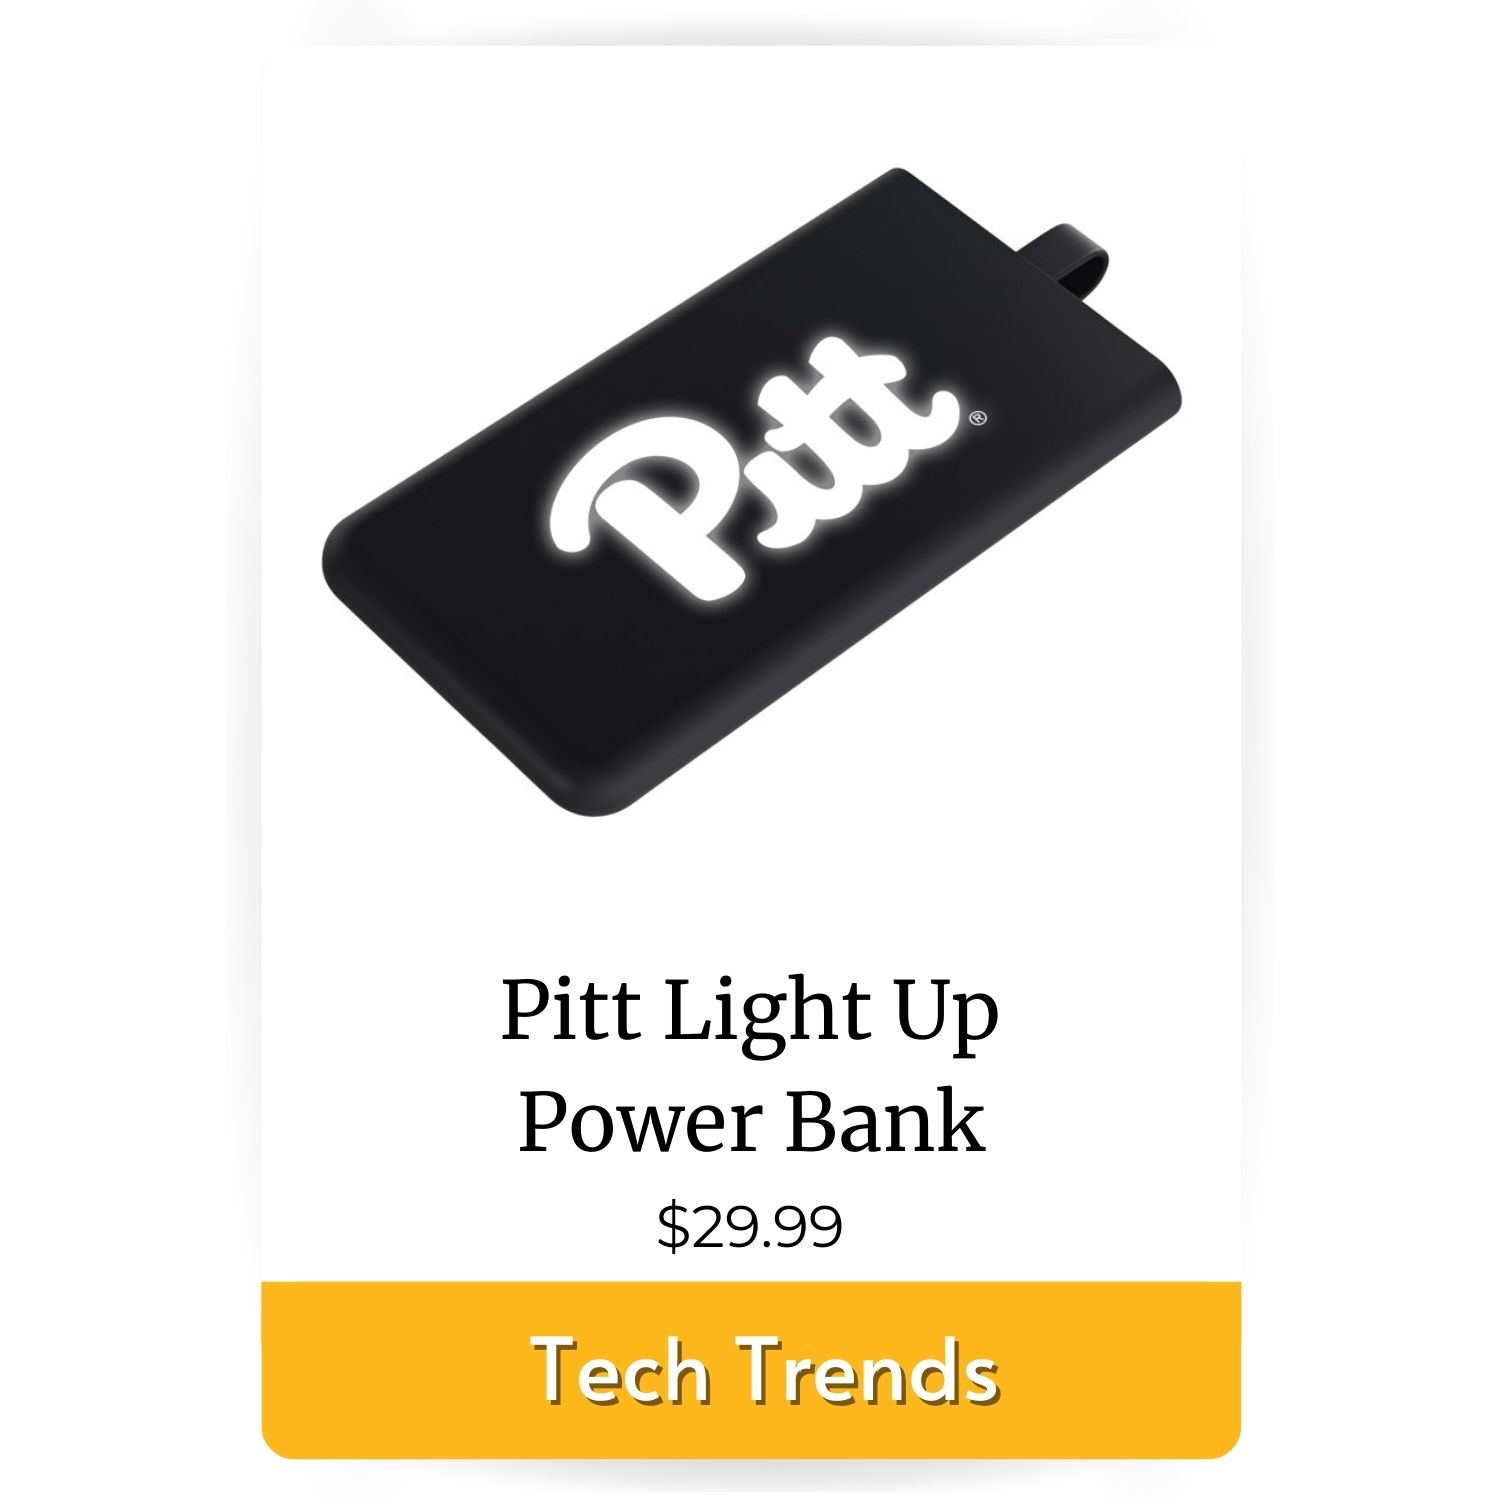 Pitt Light Up Power Bank image